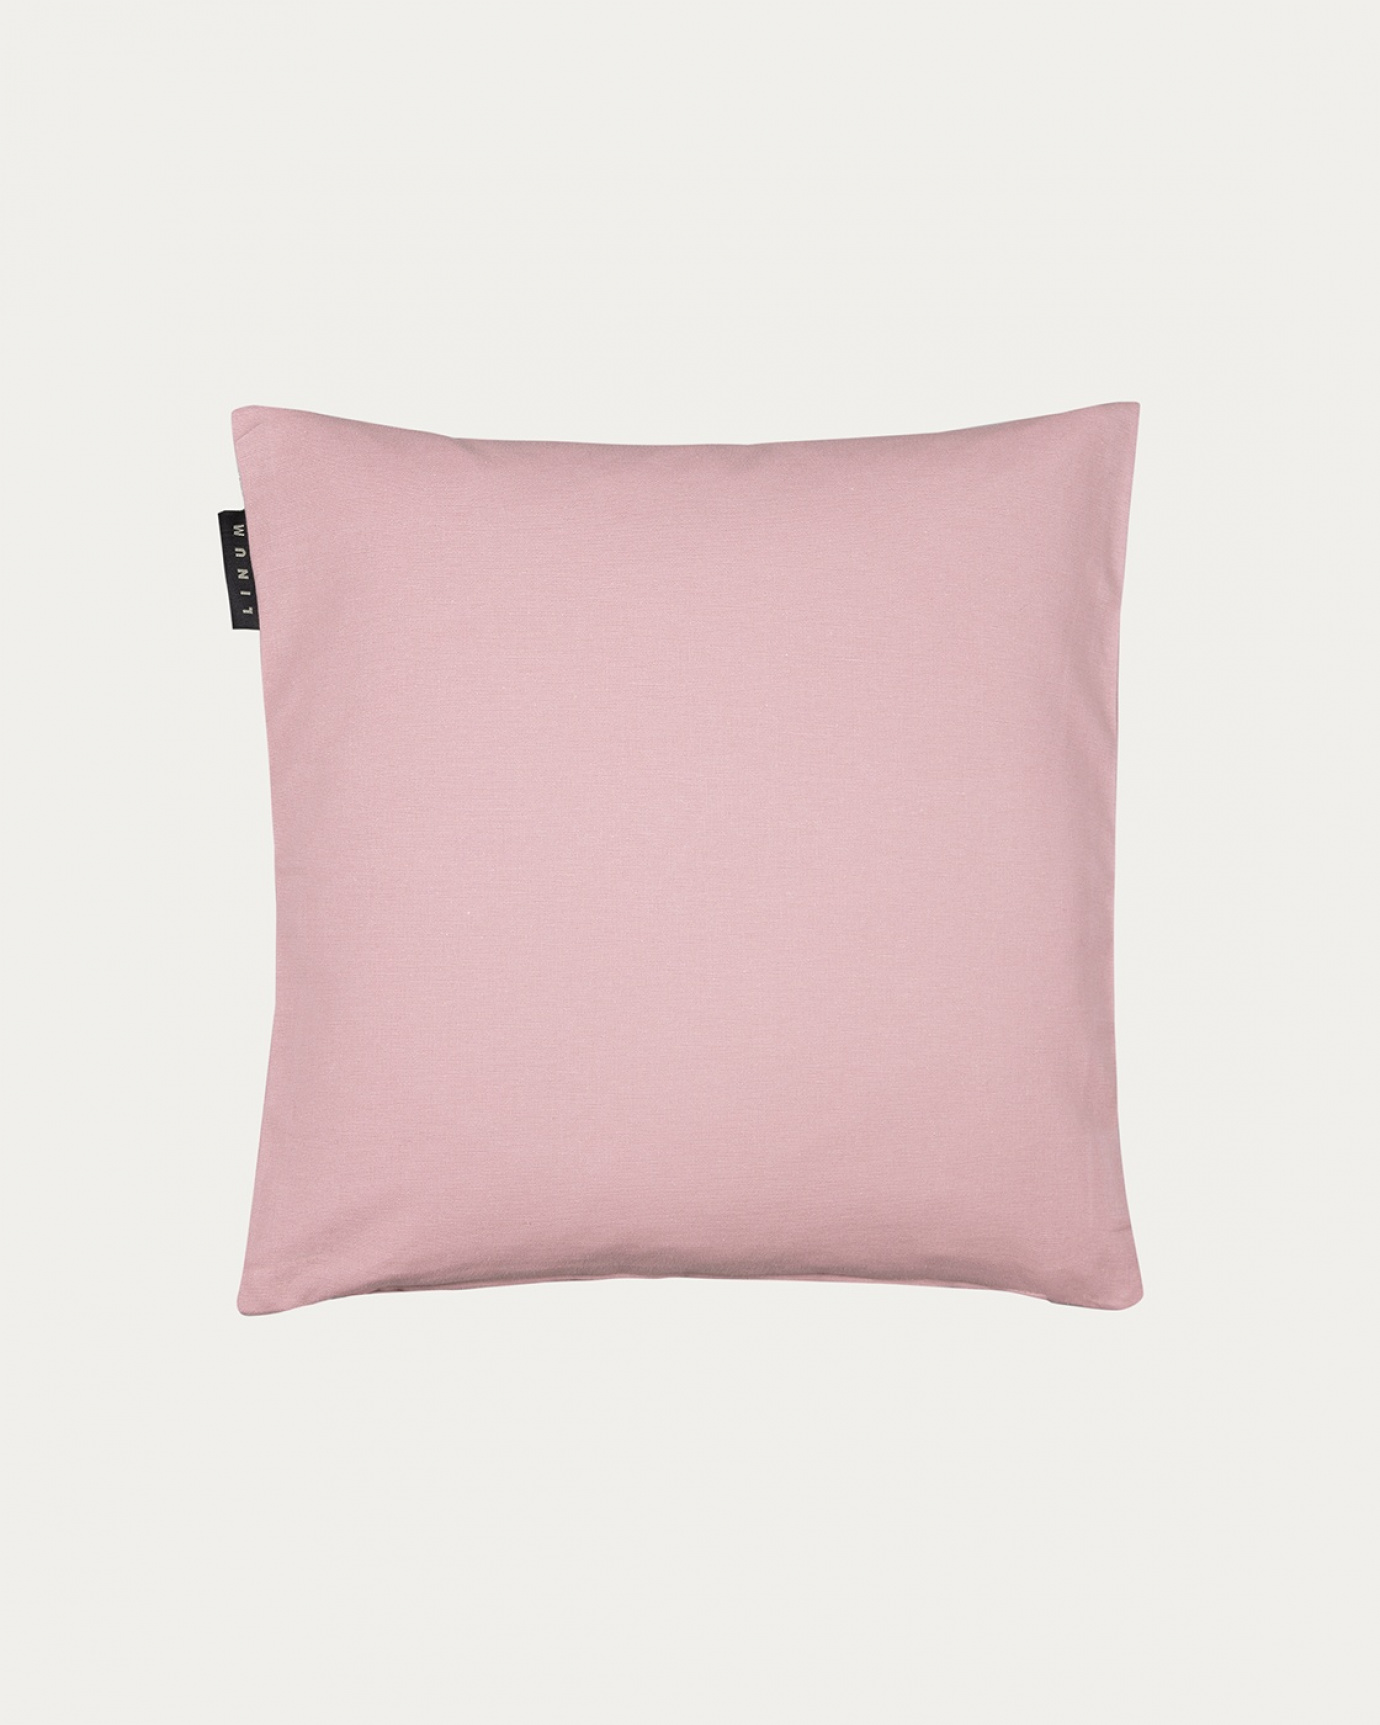 Produktbild dammig rosa ANNABELL kuddfodral av mjuk bomull från LINUM DESIGN. Storlek 40x40 cm.